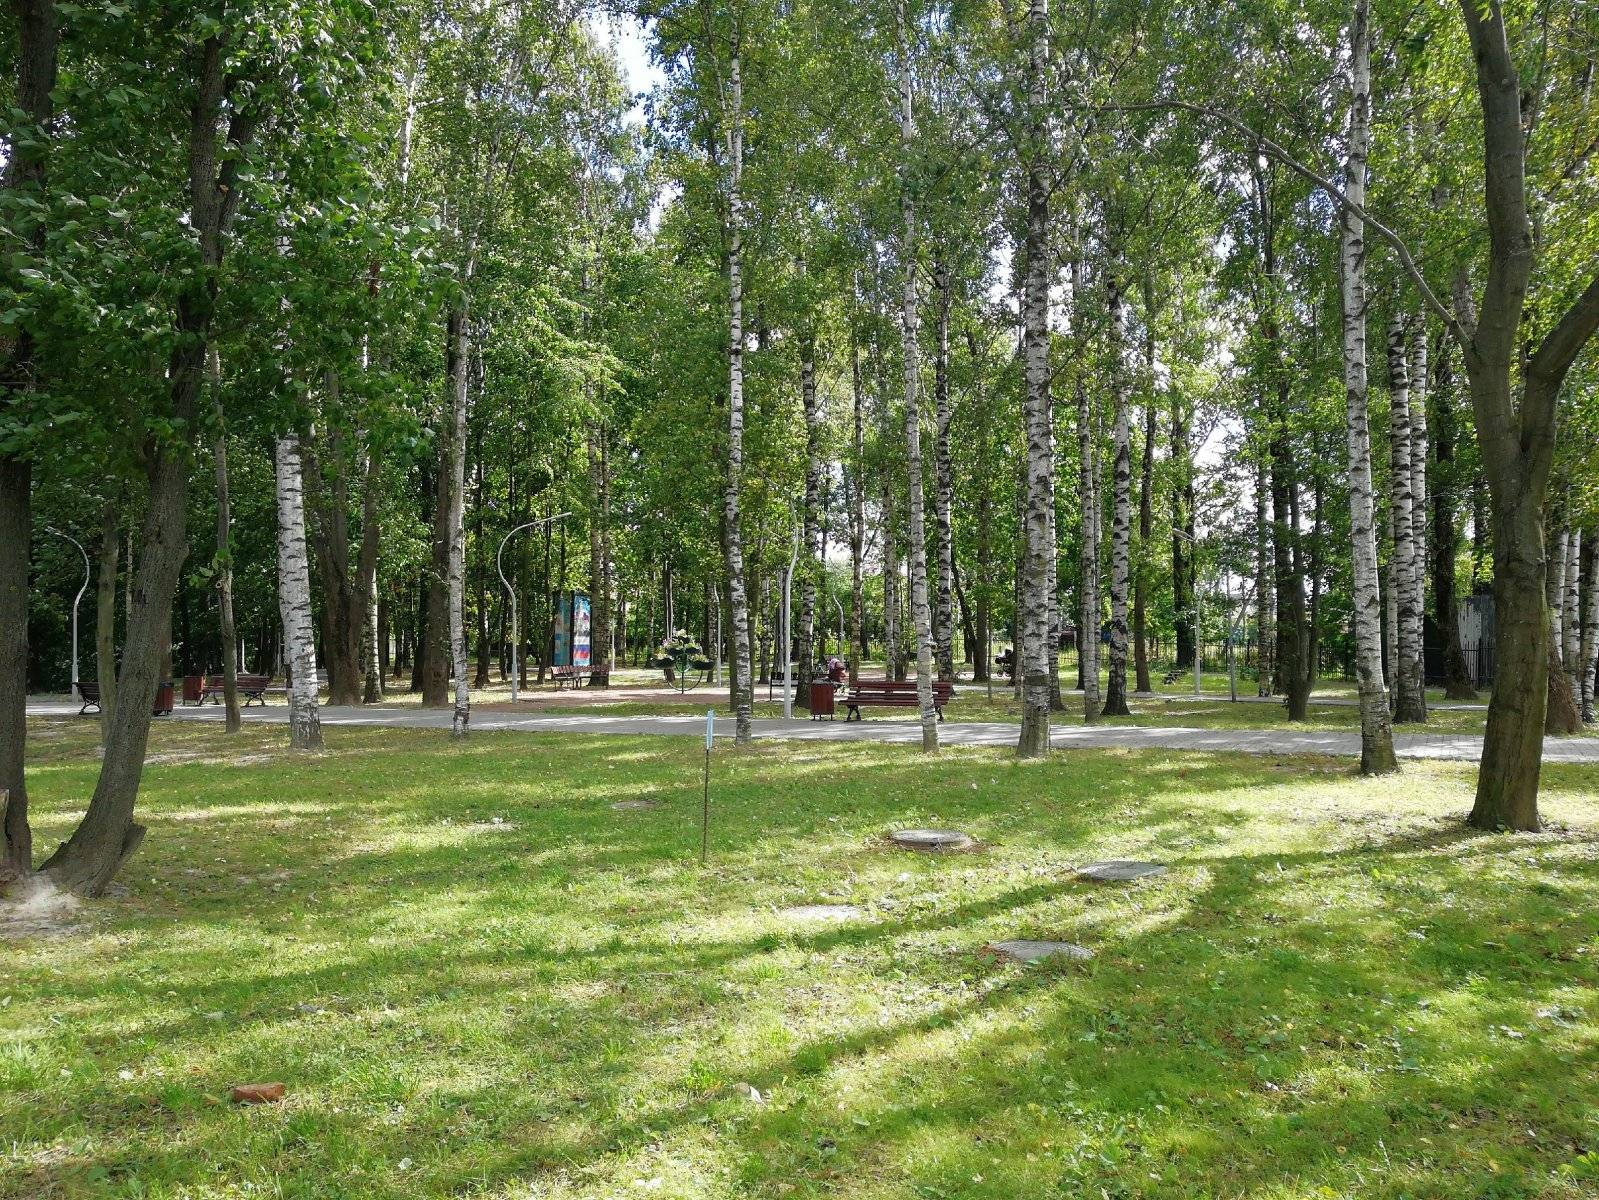 Загородные парки в спб, парки за чертой города - 172 места